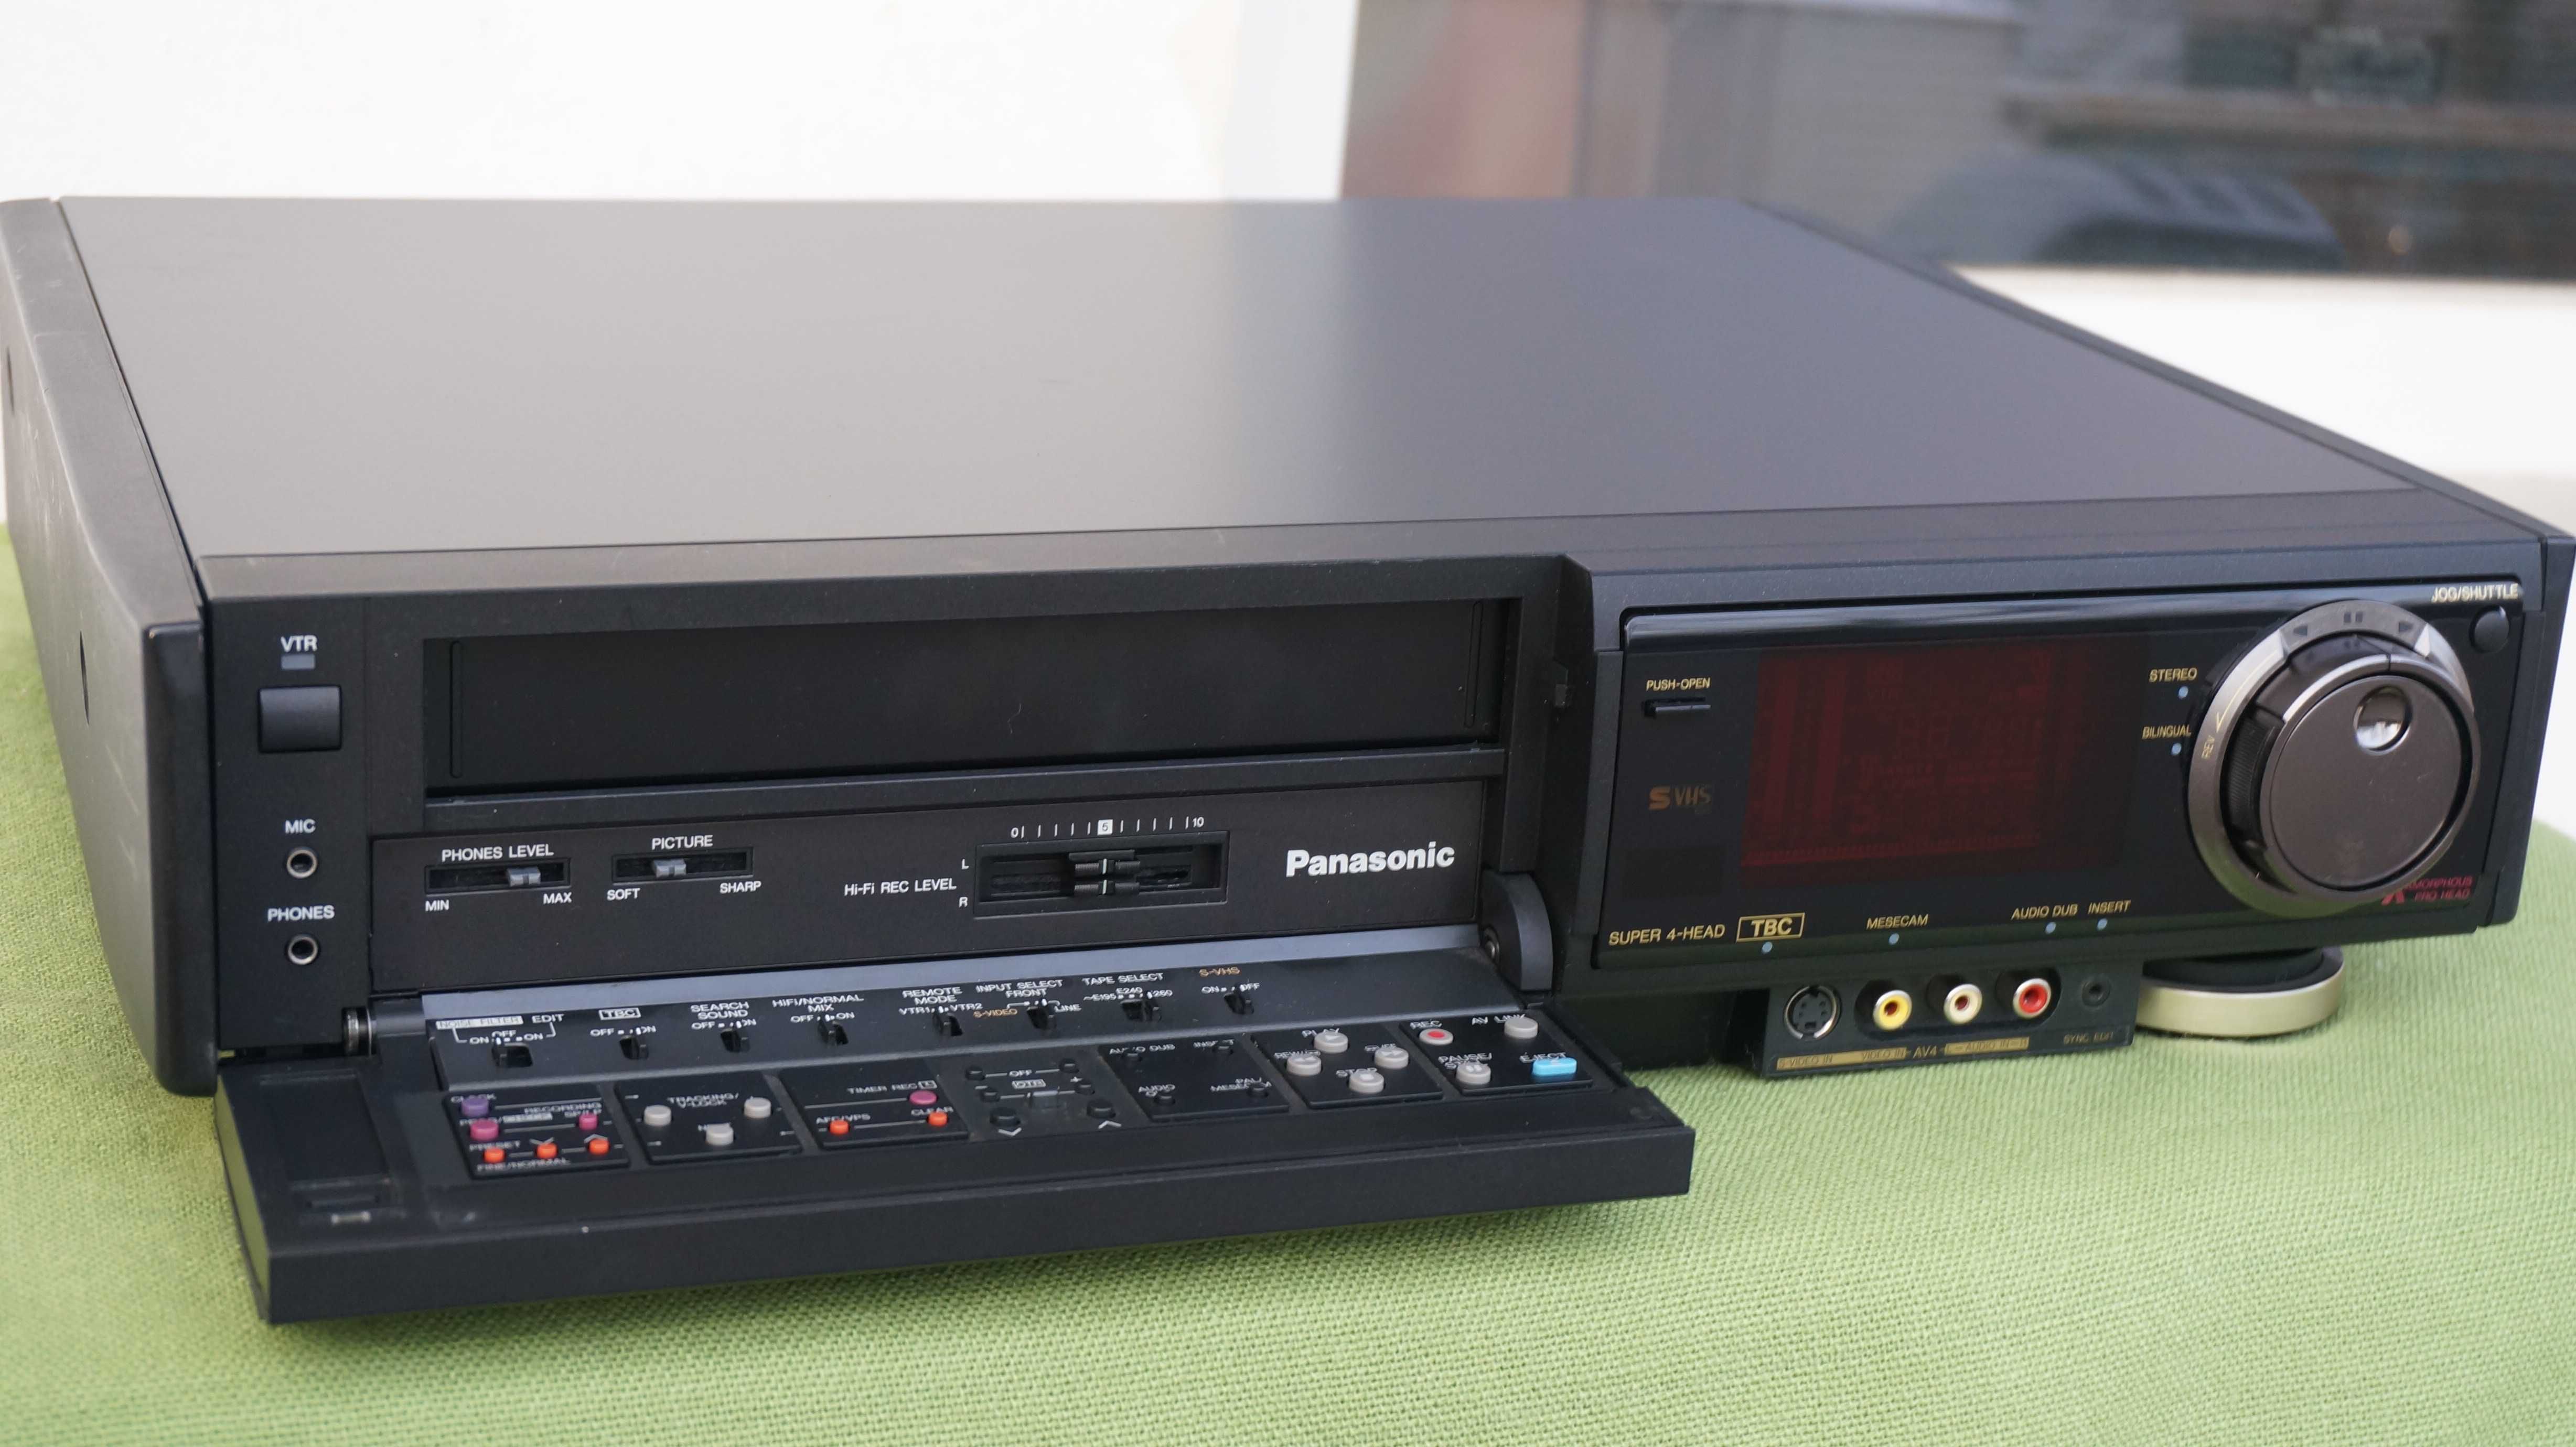 Video recorder S-VHS Panasonic NV-FS200 stereo Hi-Fi TBC